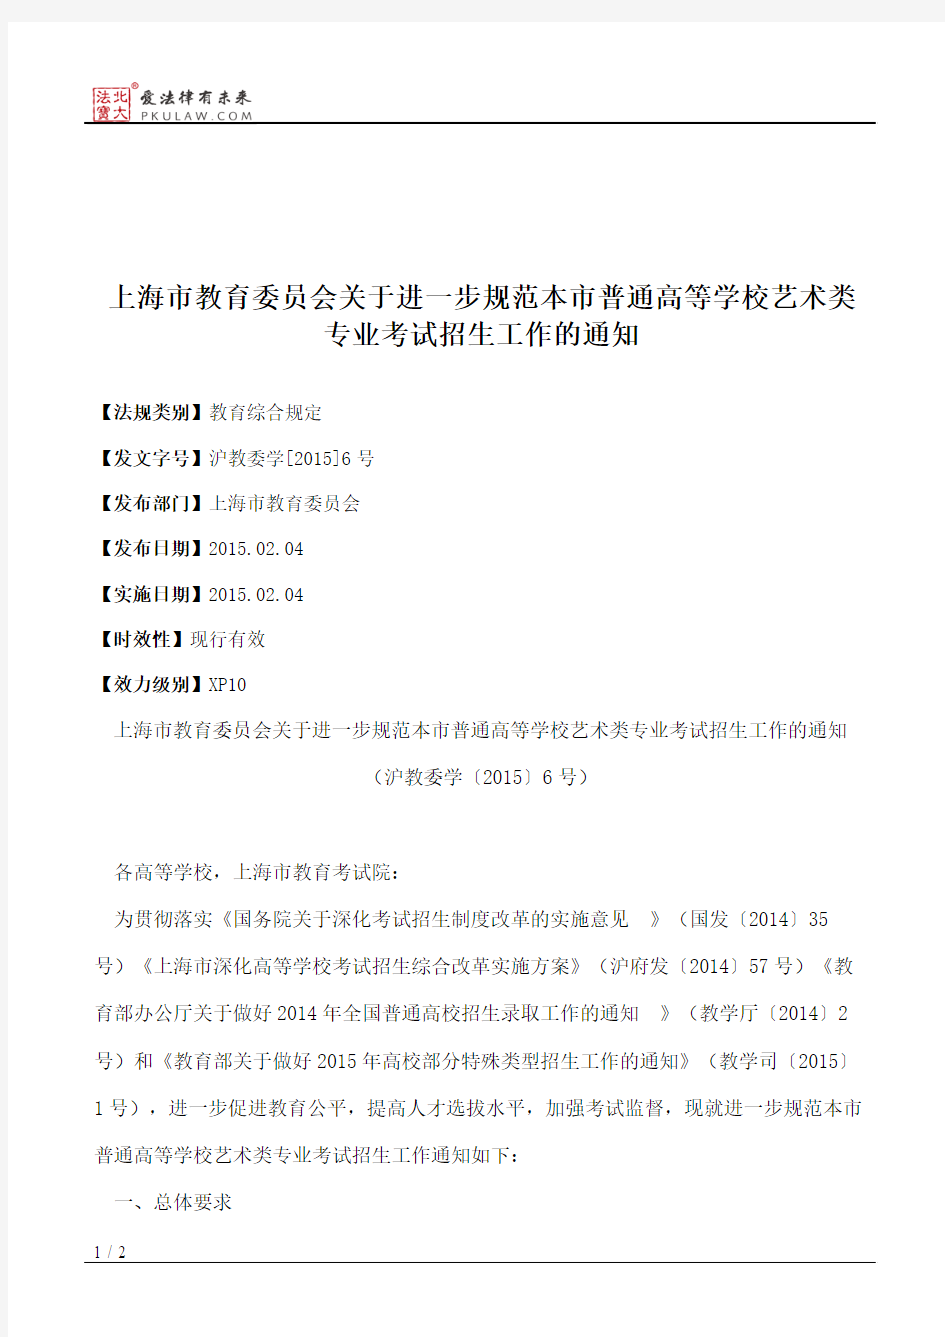 上海市教育委员会关于进一步规范本市普通高等学校艺术类专业考试